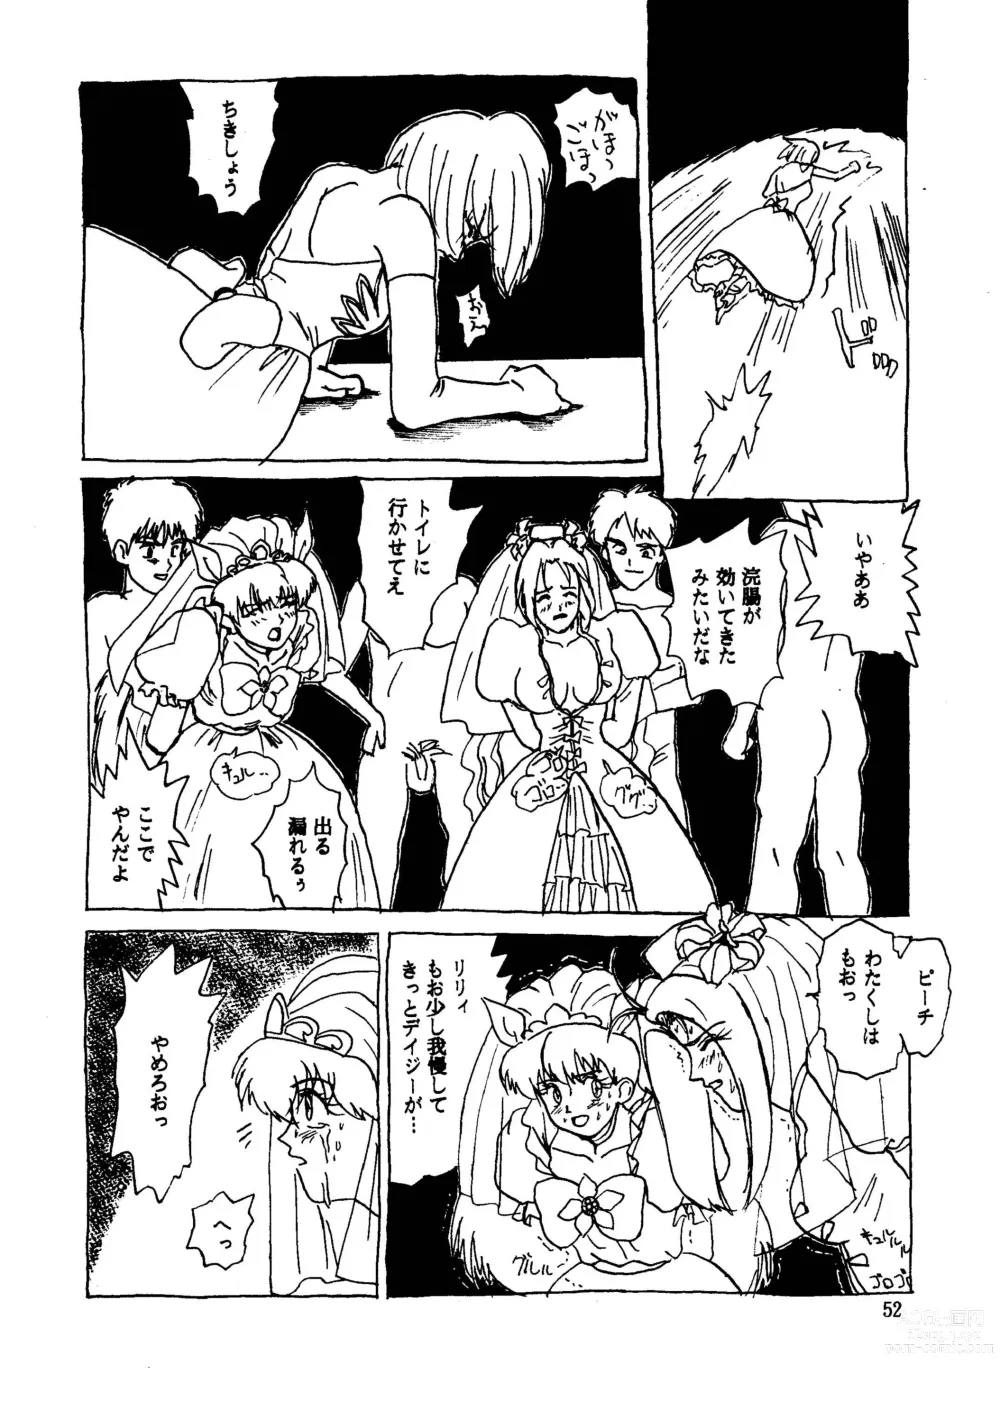 Page 52 of doujinshi GALTECH